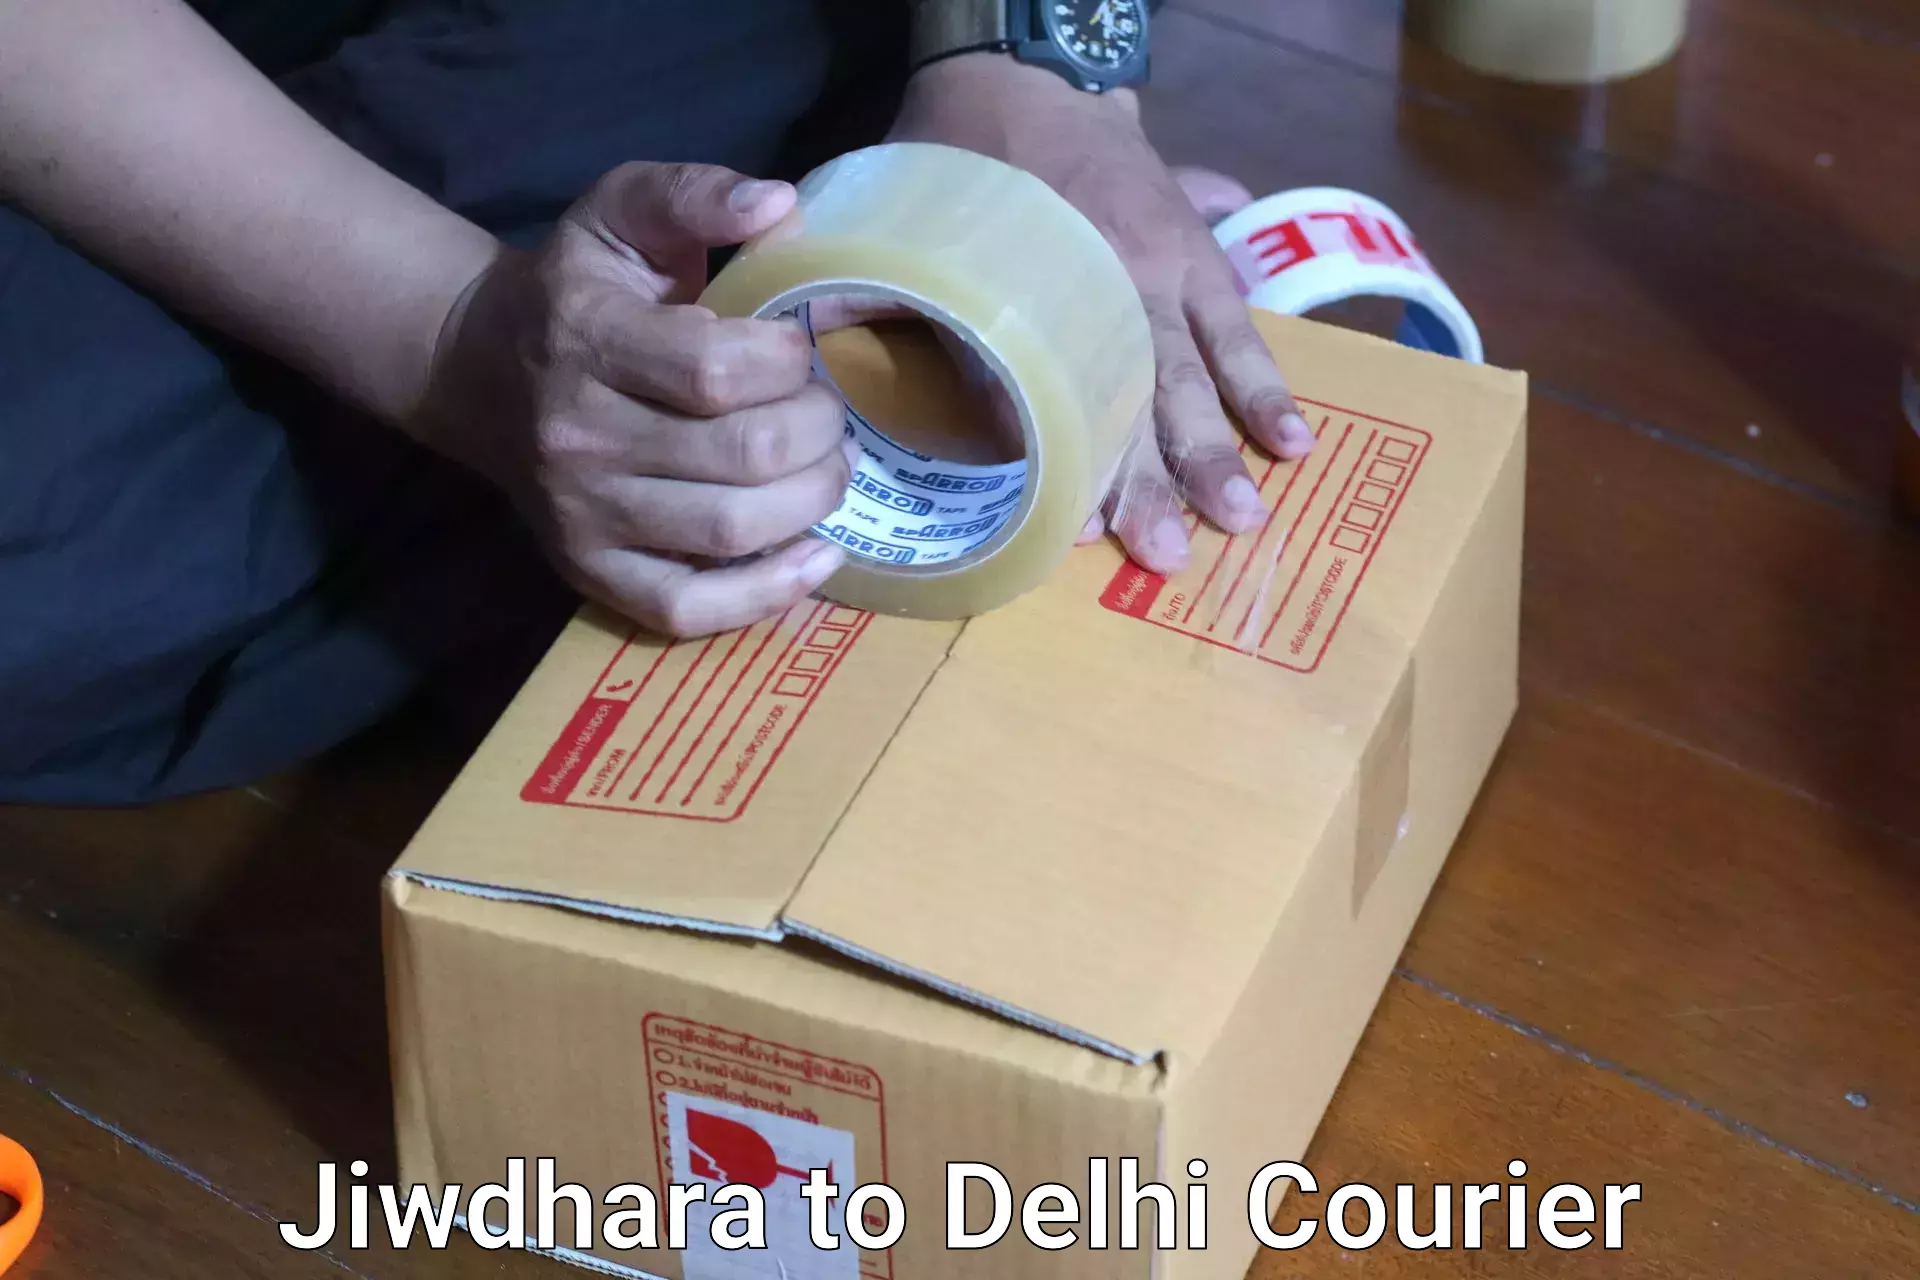 Baggage shipping experts Jiwdhara to NCR